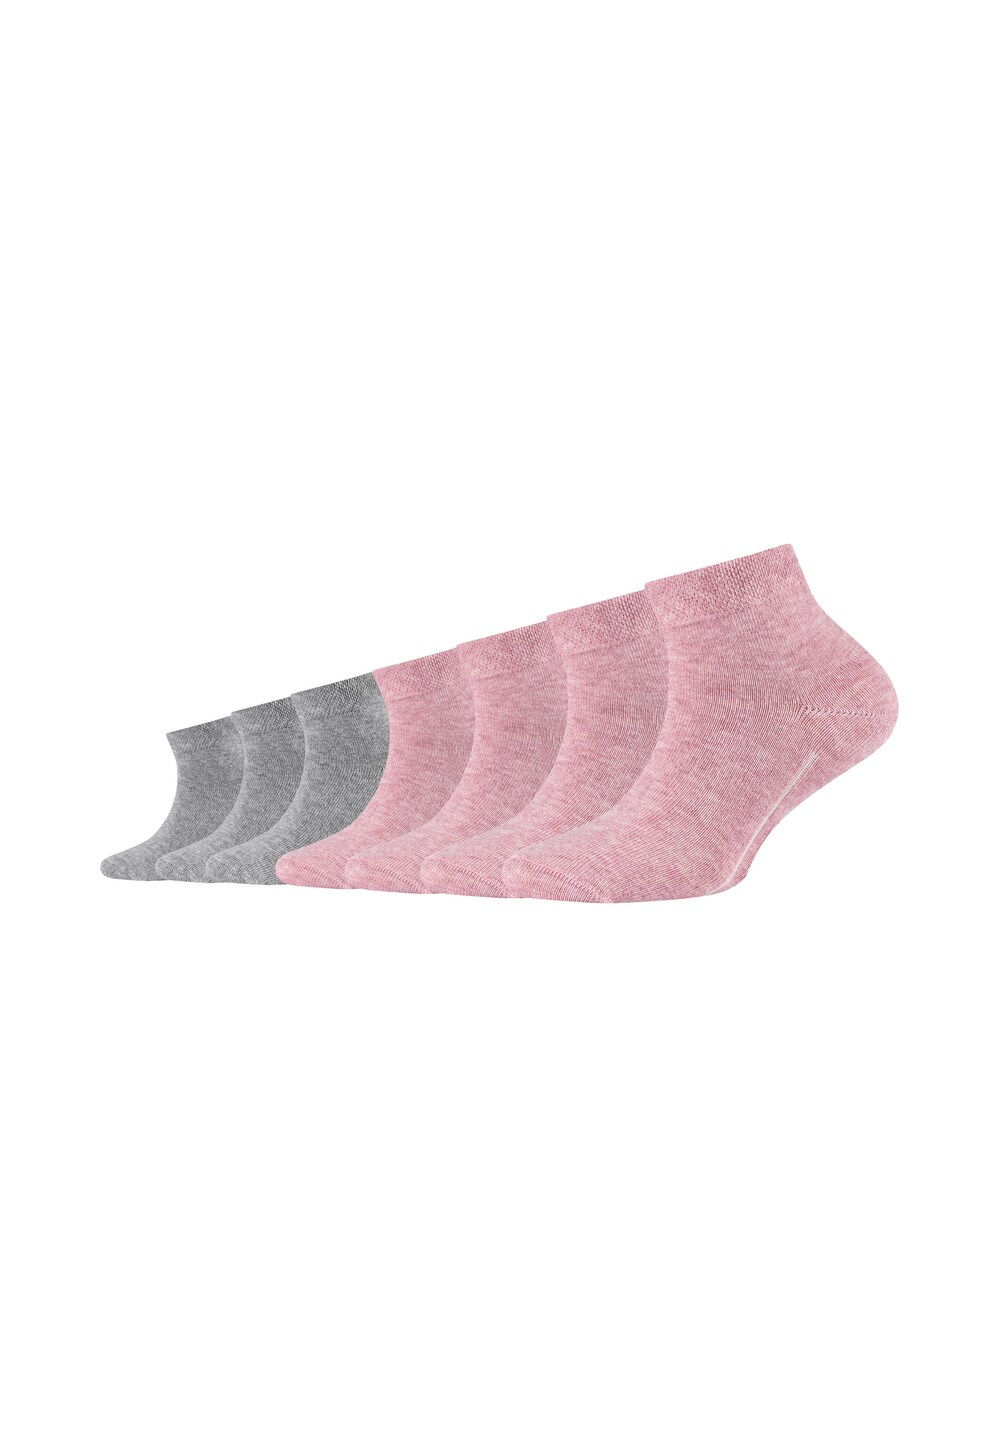 Носки Camano, пестрый серый/пестрый розовый